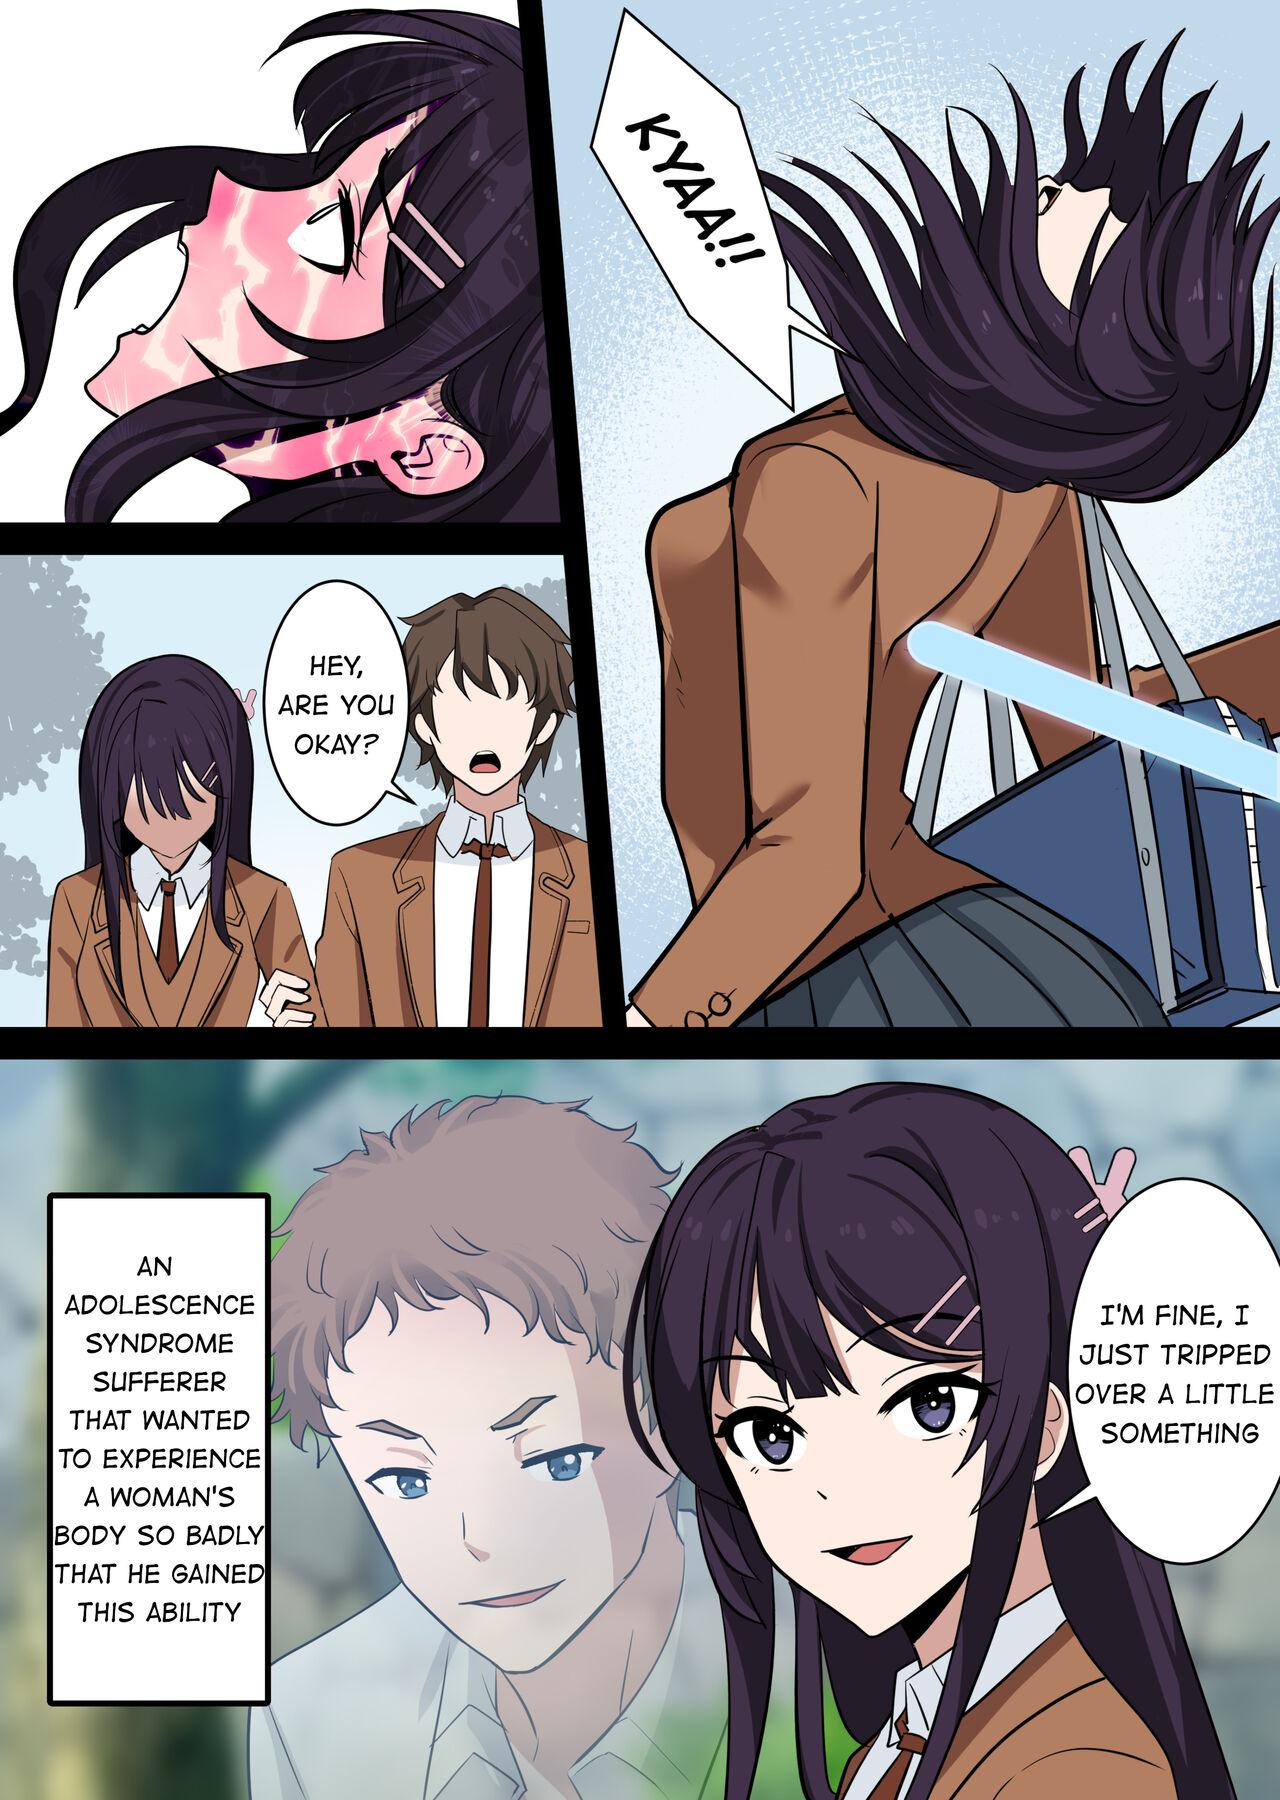 Dominant Possessing Sakurajima Mai and Cucking Her Lover - Seishun buta yarou wa bunny girl senpai no yume o minai Culo - Page 2